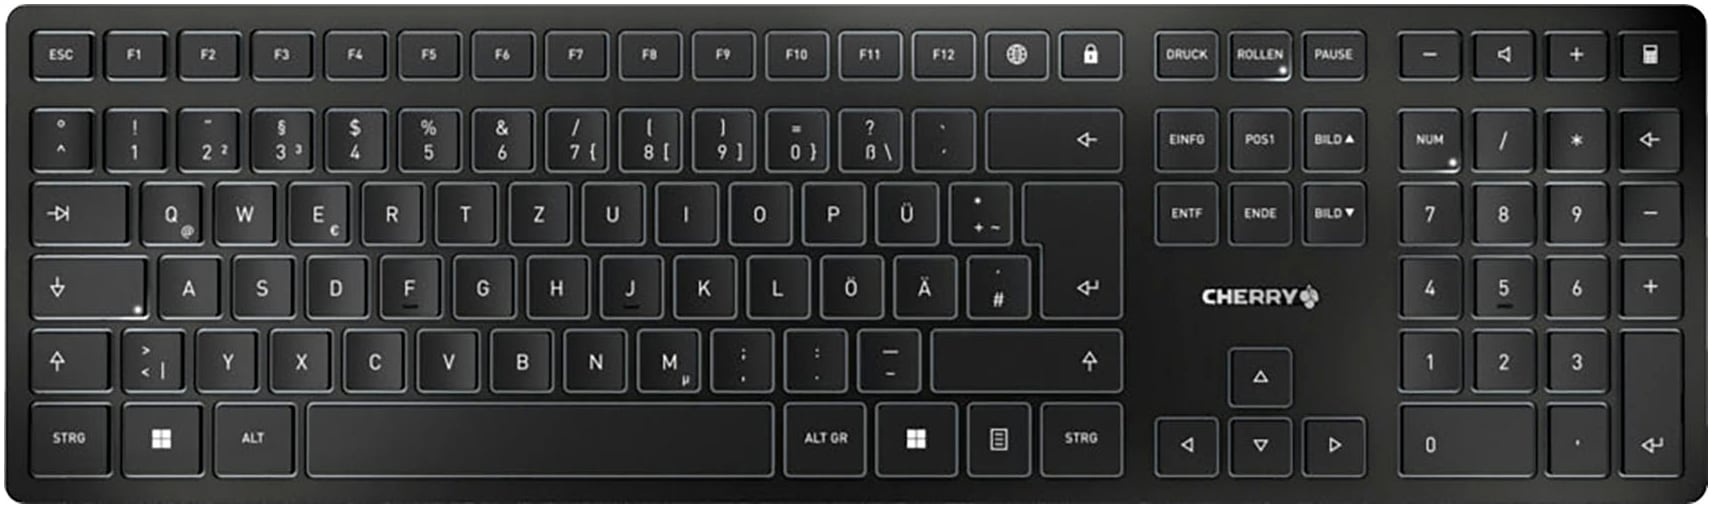 Cherry Tastatur »KW 9100 SLIM«, (Ziffernblock-Fn-Tasten-Windows-Sperrtaste-USB-Anschluss) Cherry schwarz